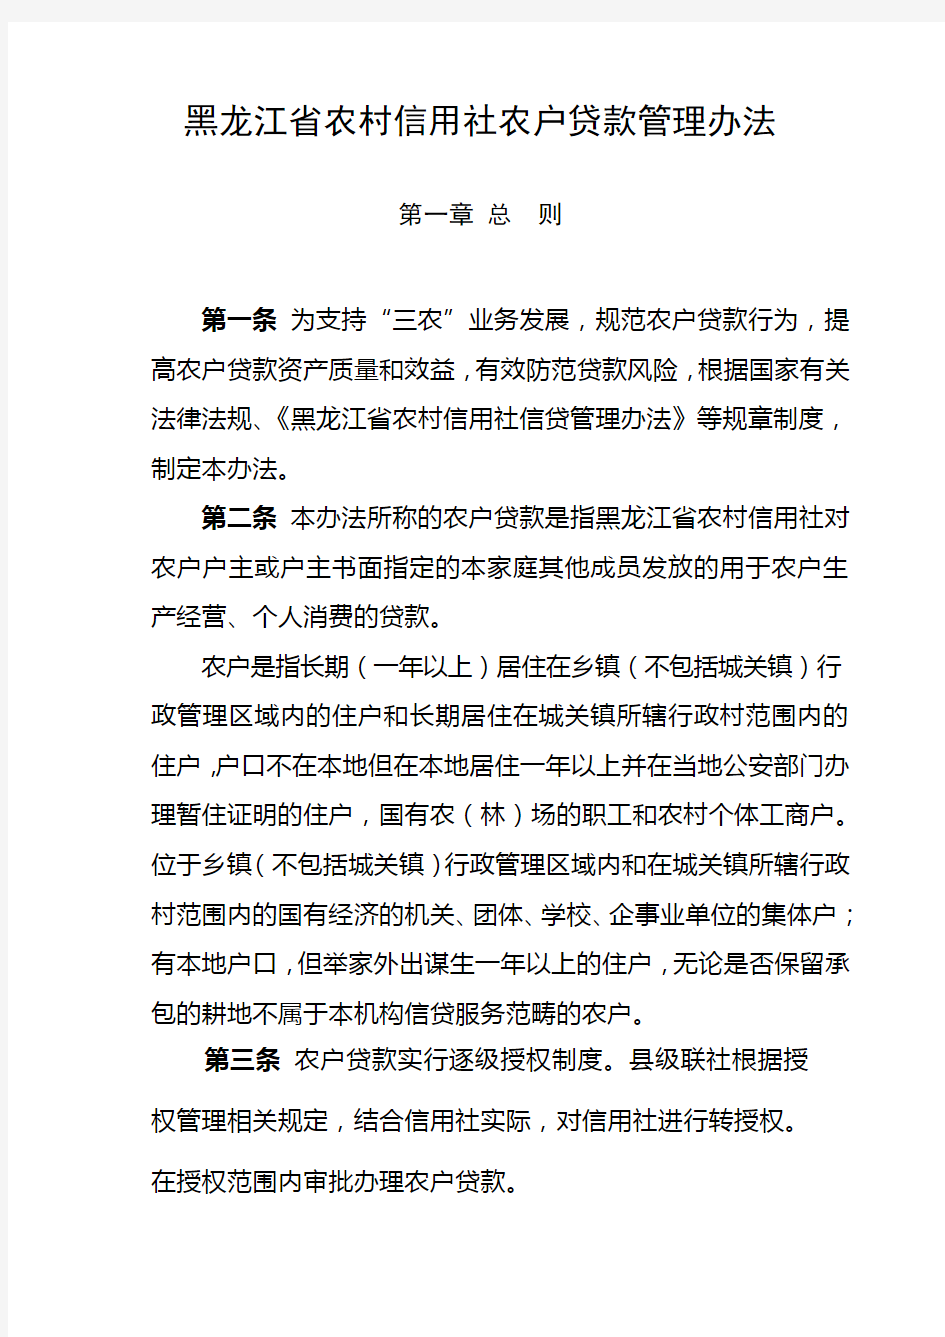 黑龙江省农村信用社农户贷款管理办法